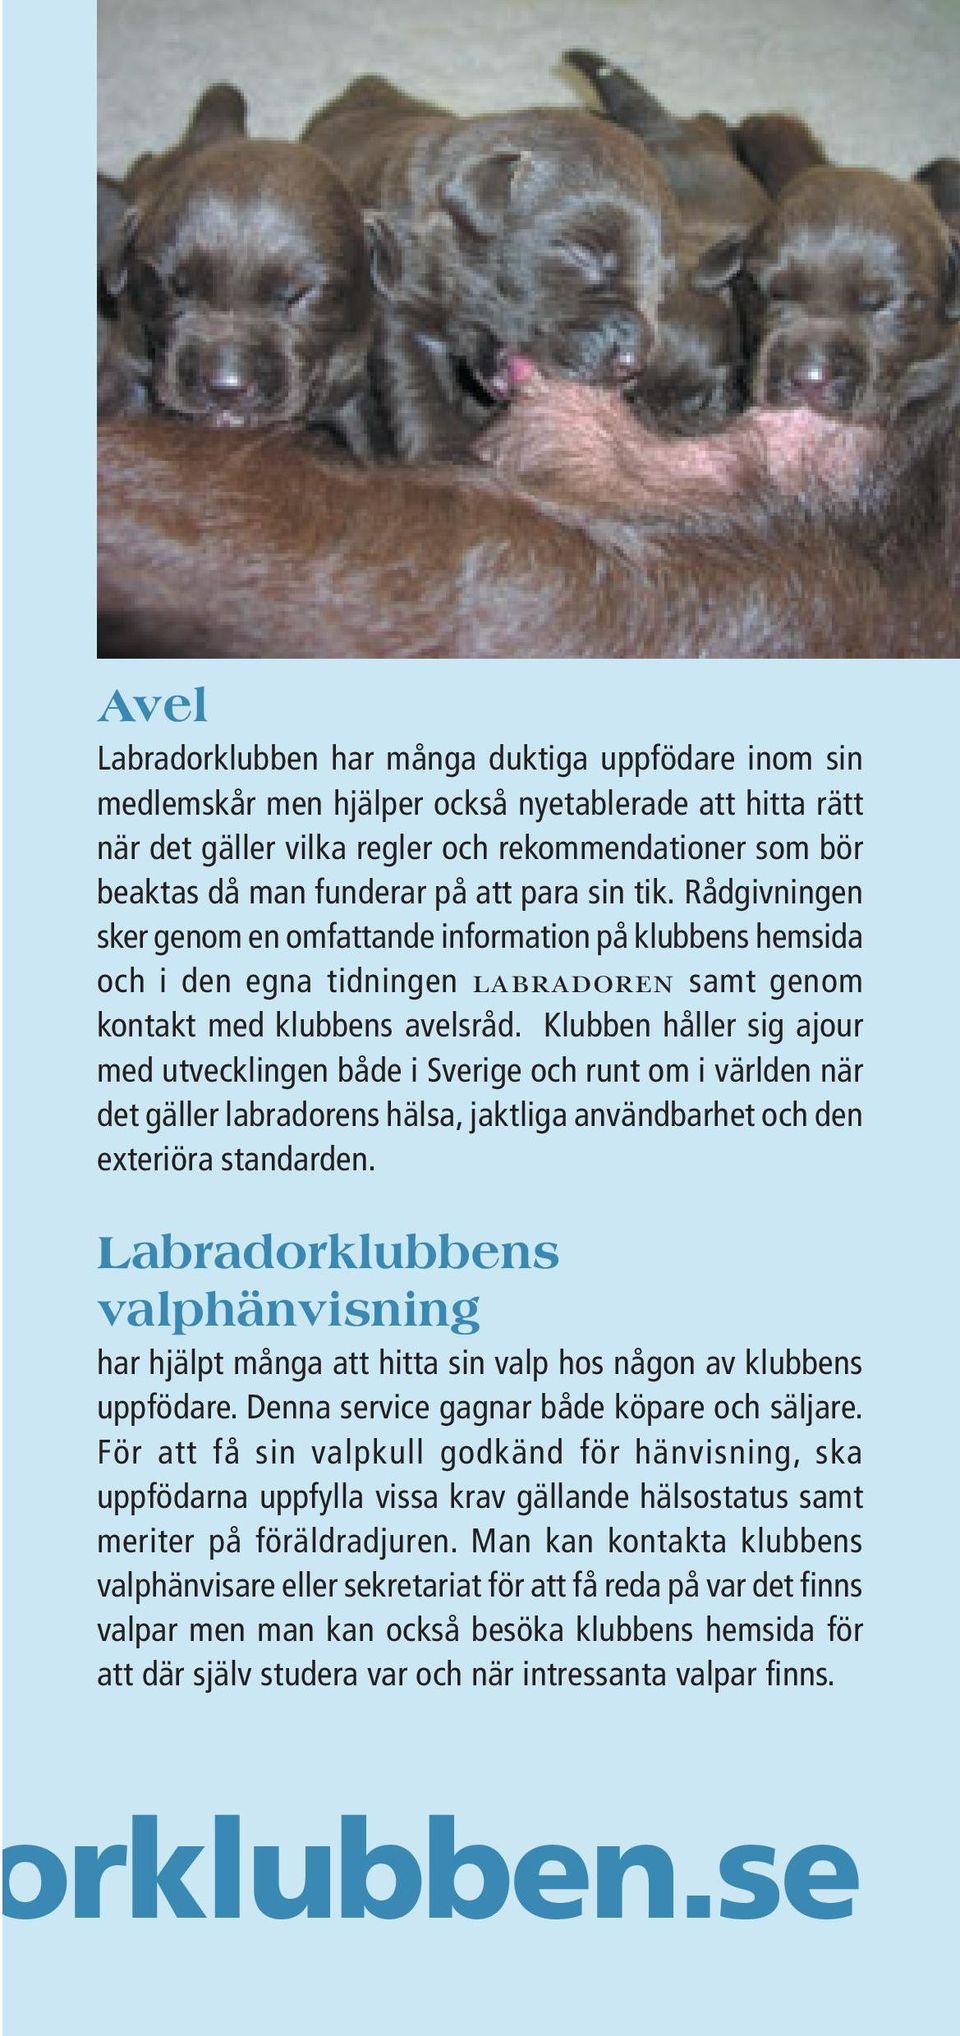 Klubben håller sig ajour med utvecklingen både i Sverige och runt om i världen när det gäller labradorens hälsa, jaktliga användbarhet och den exteriöra standarden.